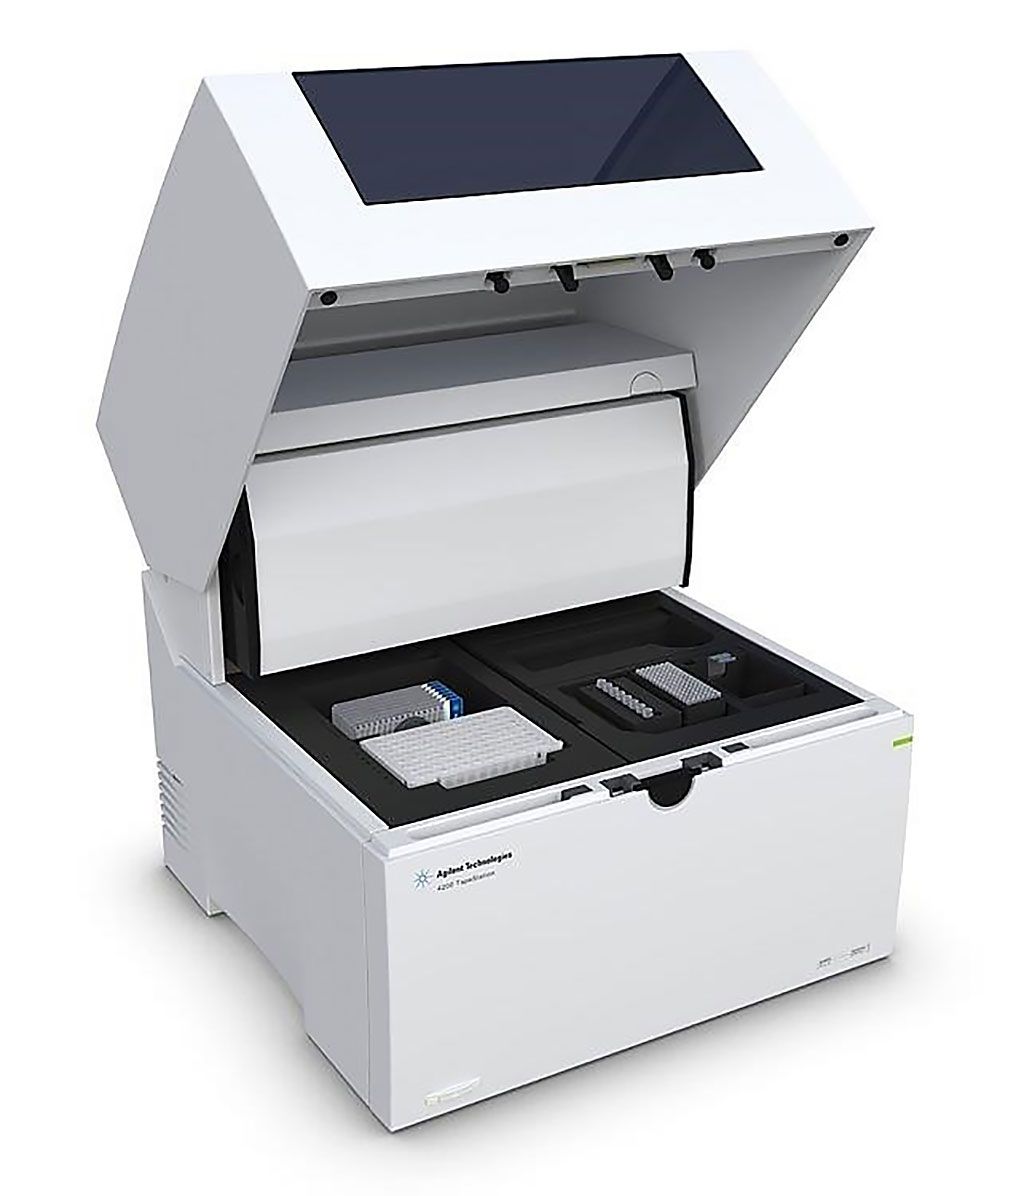 Imagen: El sistema Agilent 4200 TapeStation es una herramienta de electroforesis automatizada establecida para el control de calidad de las muestras de ADN y ARN (Fotografía cortesía de Agilent Technologies).